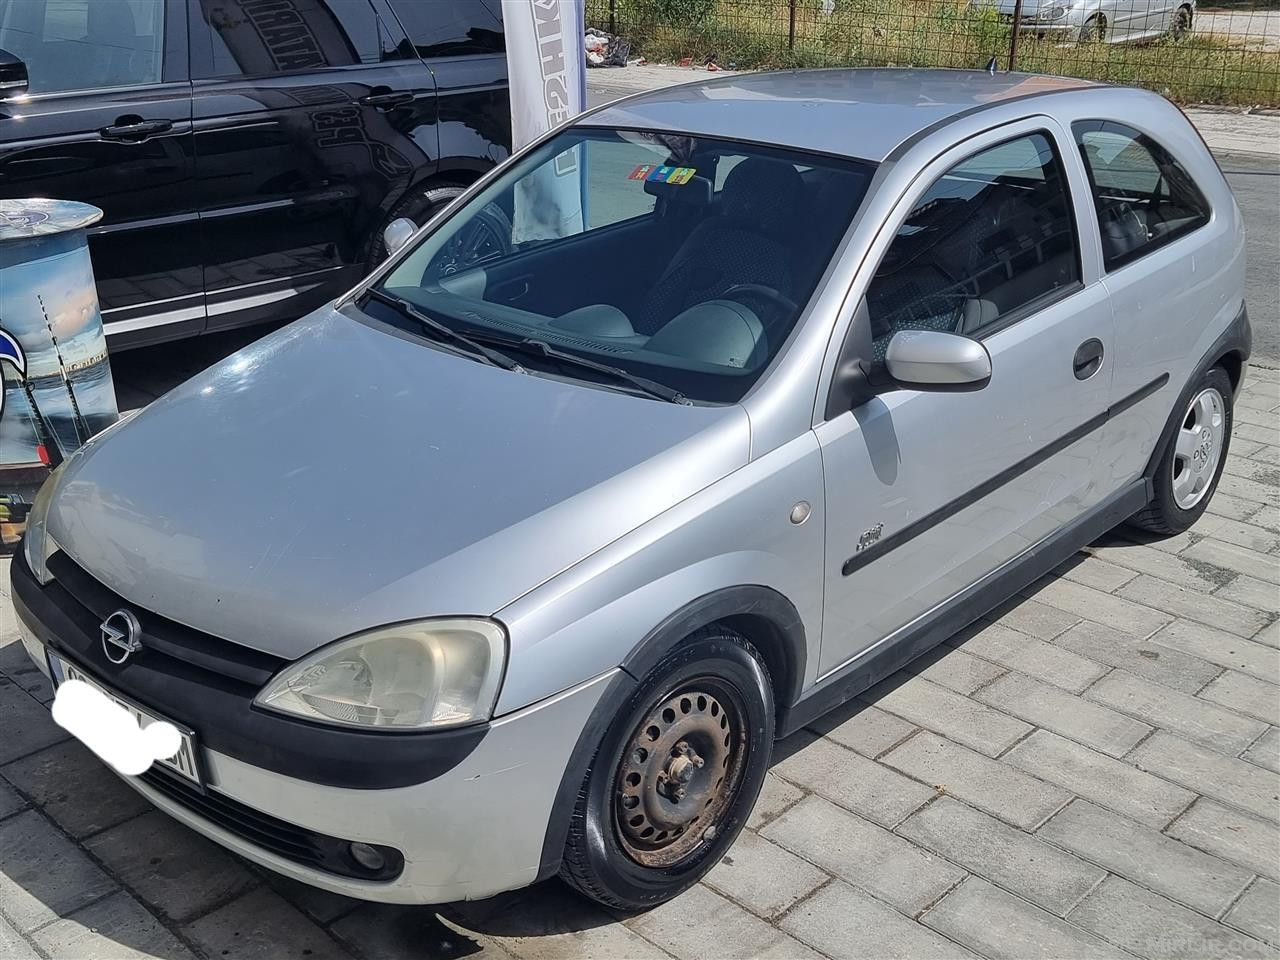 Opel korsa c 1.4 benzin rks i skaduar